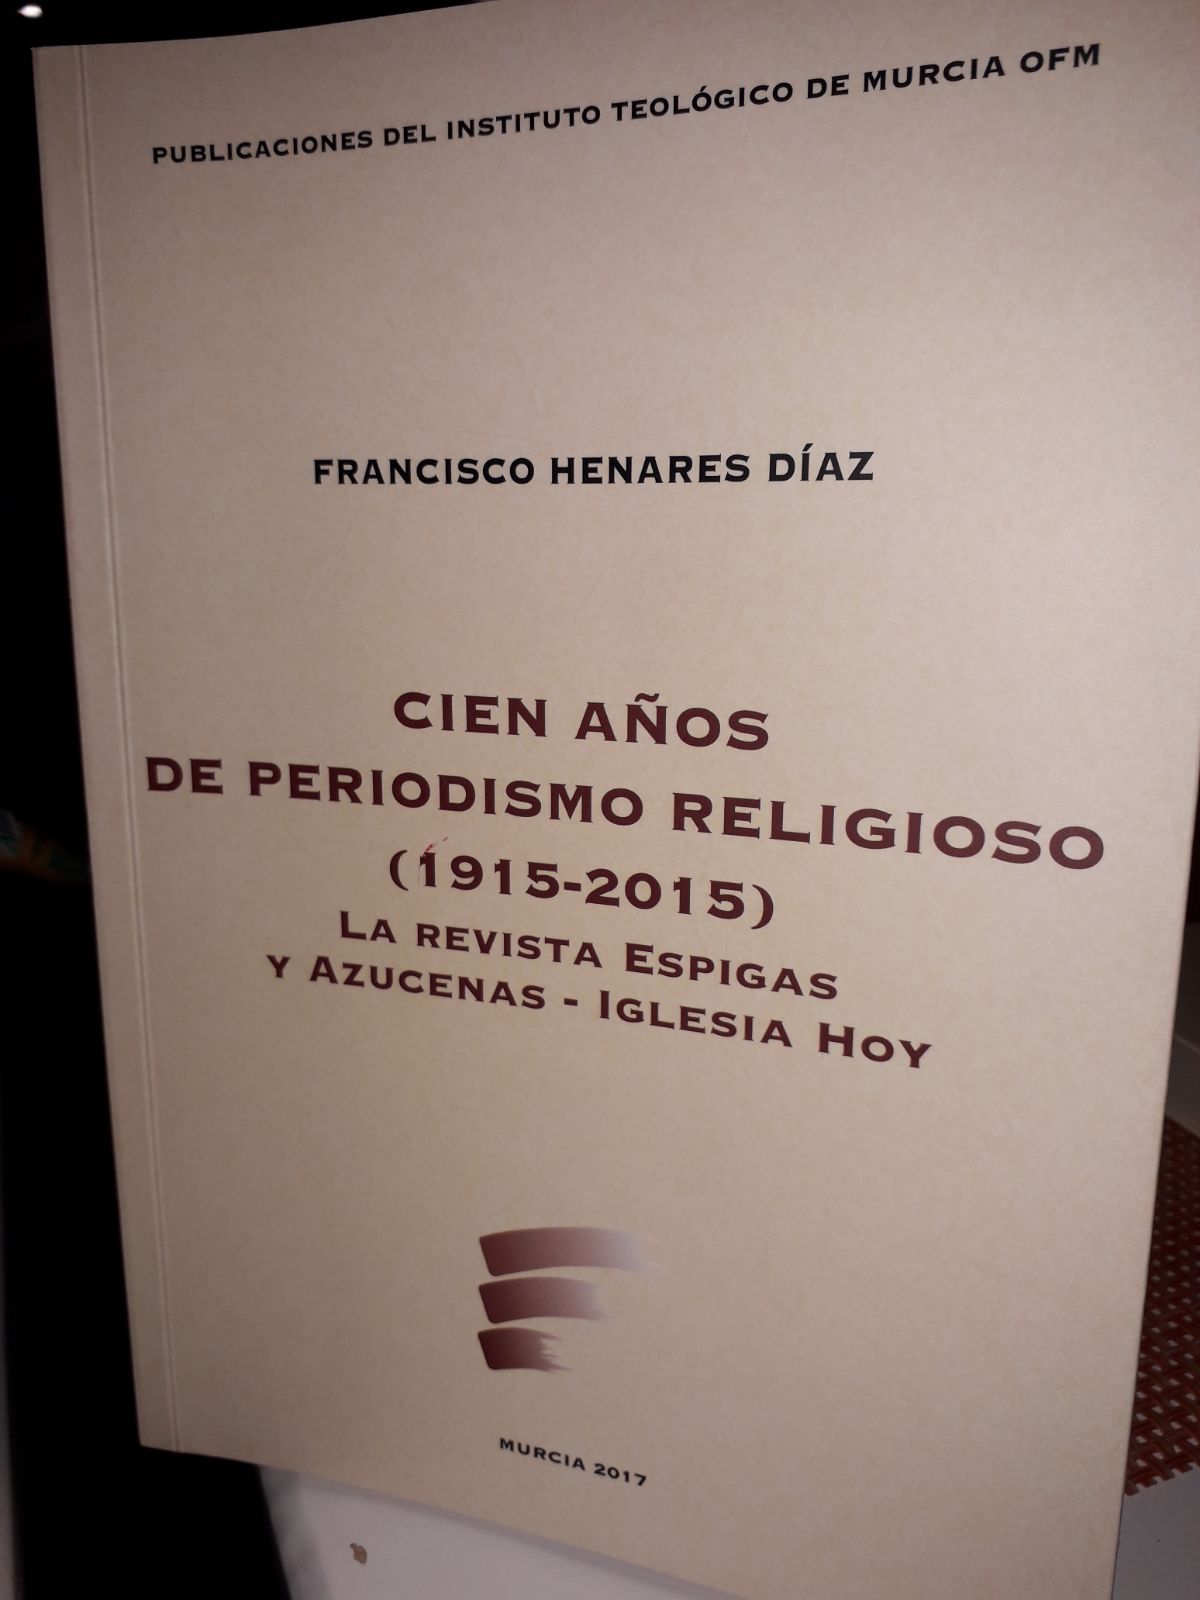 Presentado el libro ‘Cien Años de Periodismo Religioso, revista Espigas y Azucenas. Iglesia hoy’